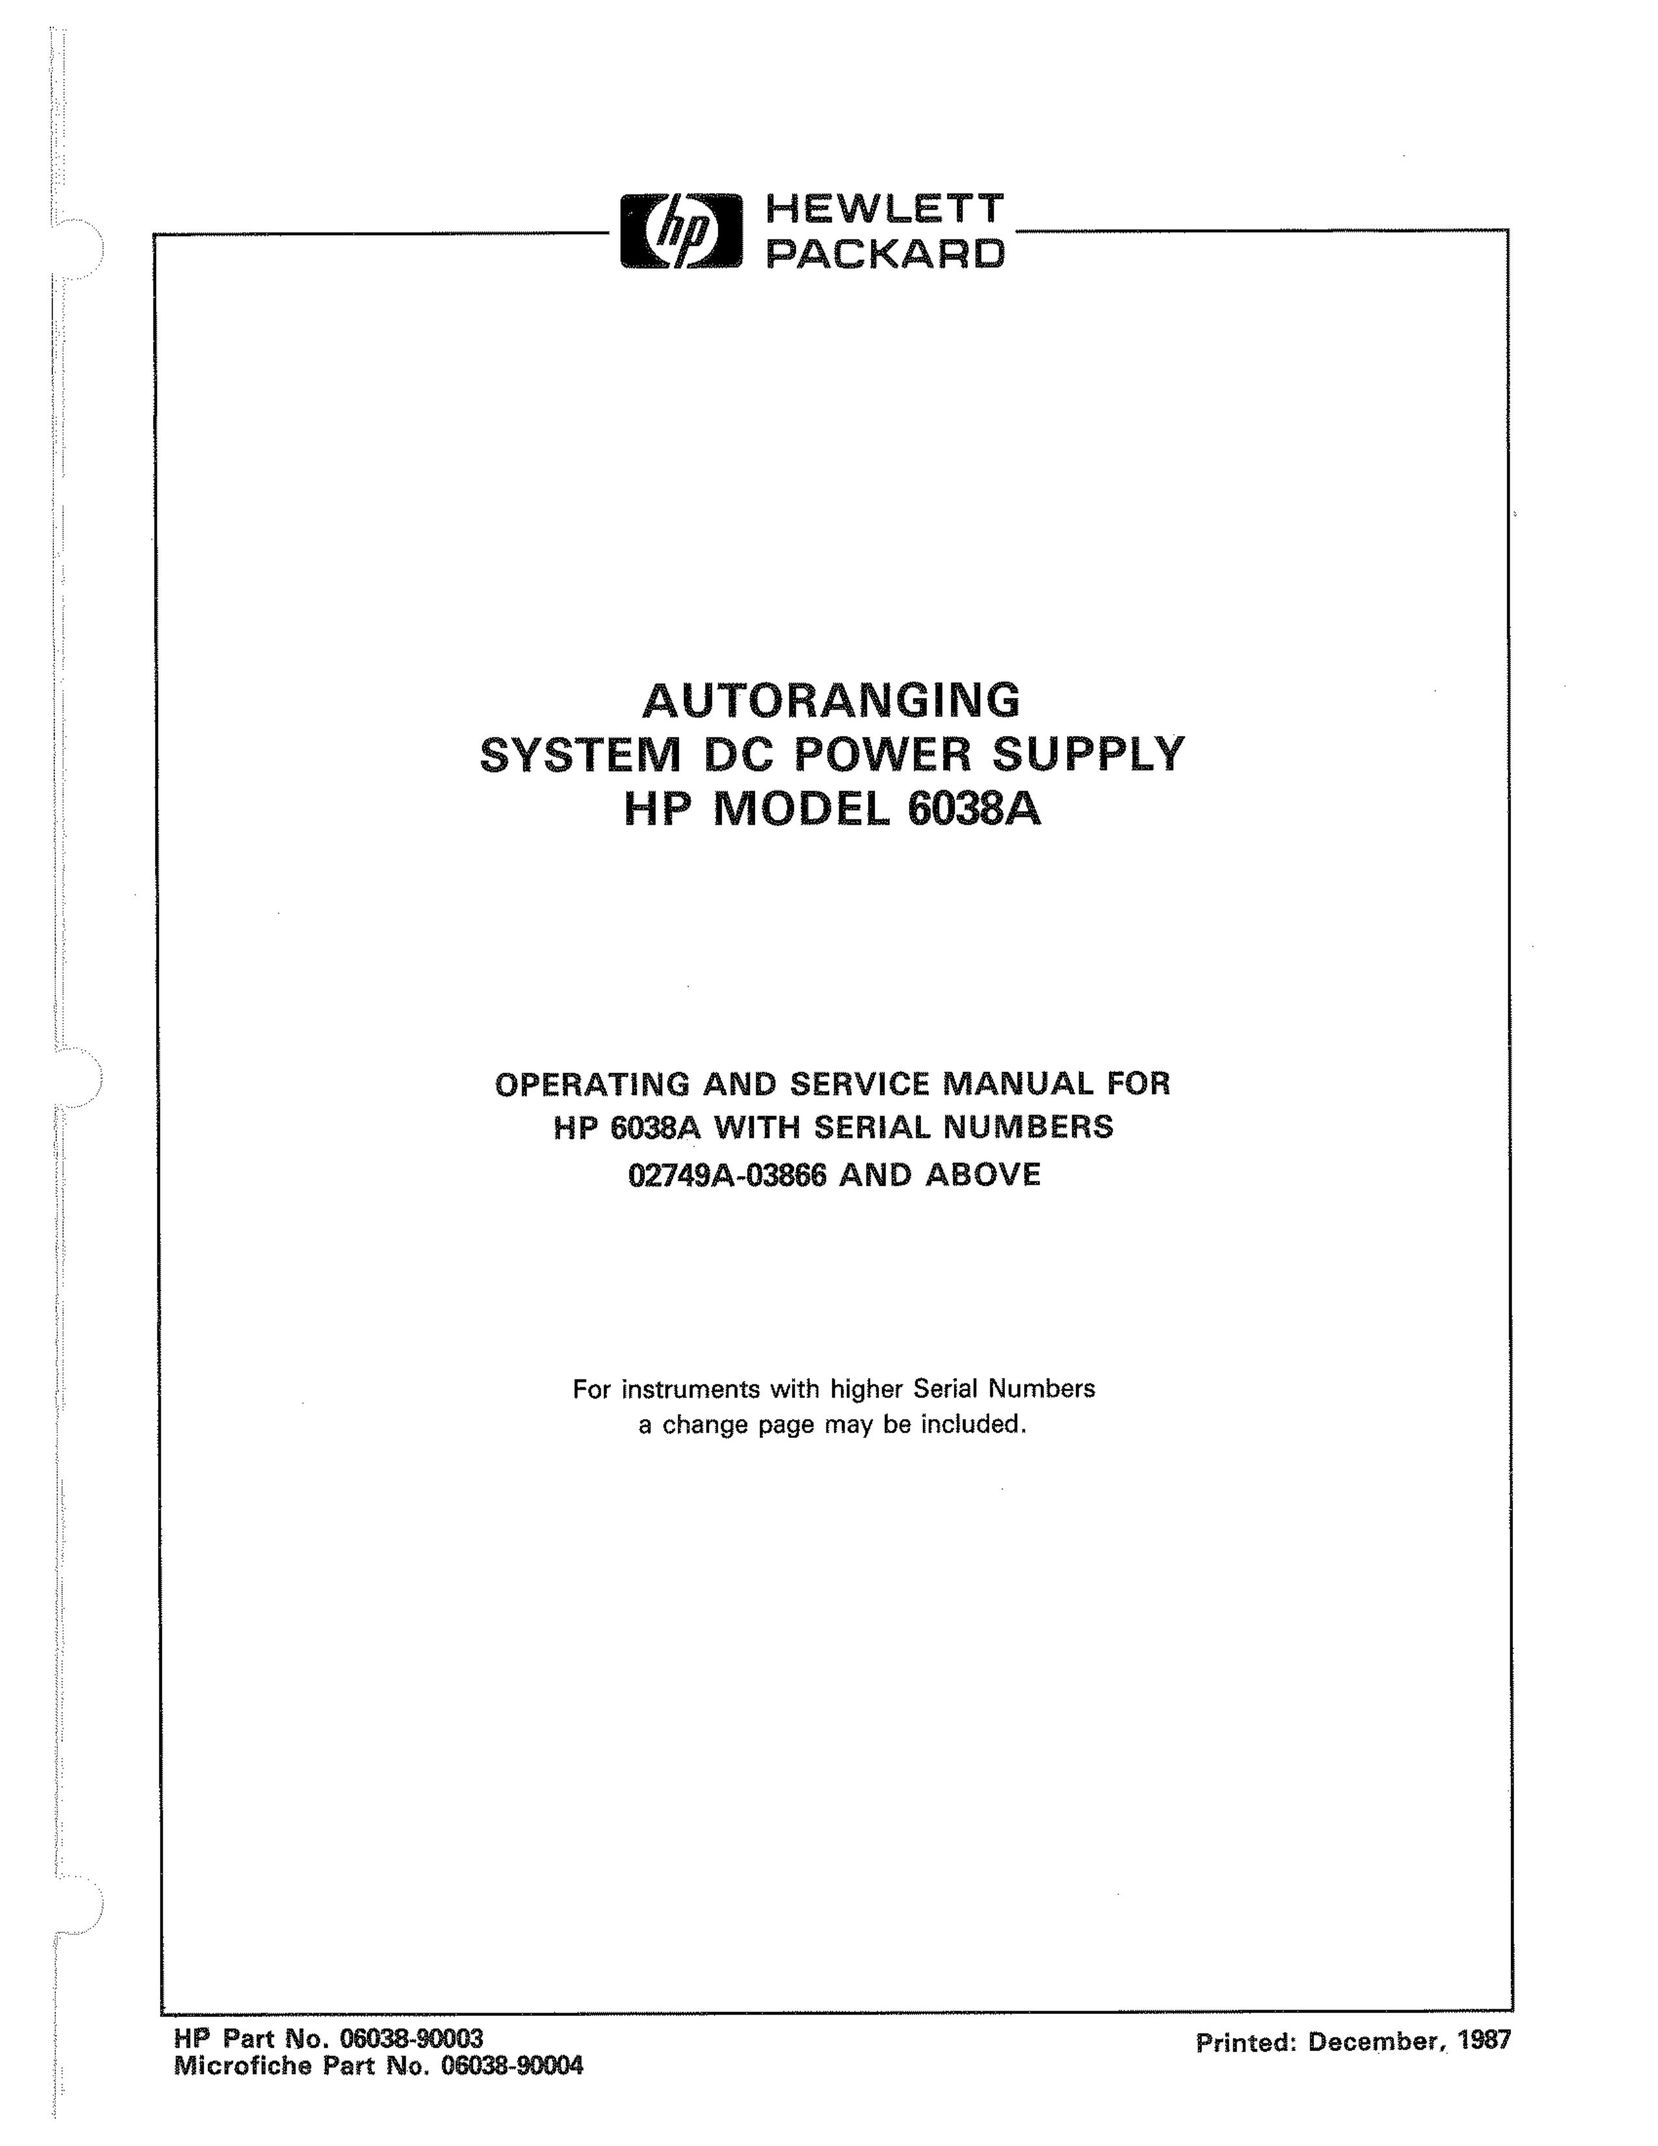 HP (Hewlett-Packard) 6038A Power Supply User Manual